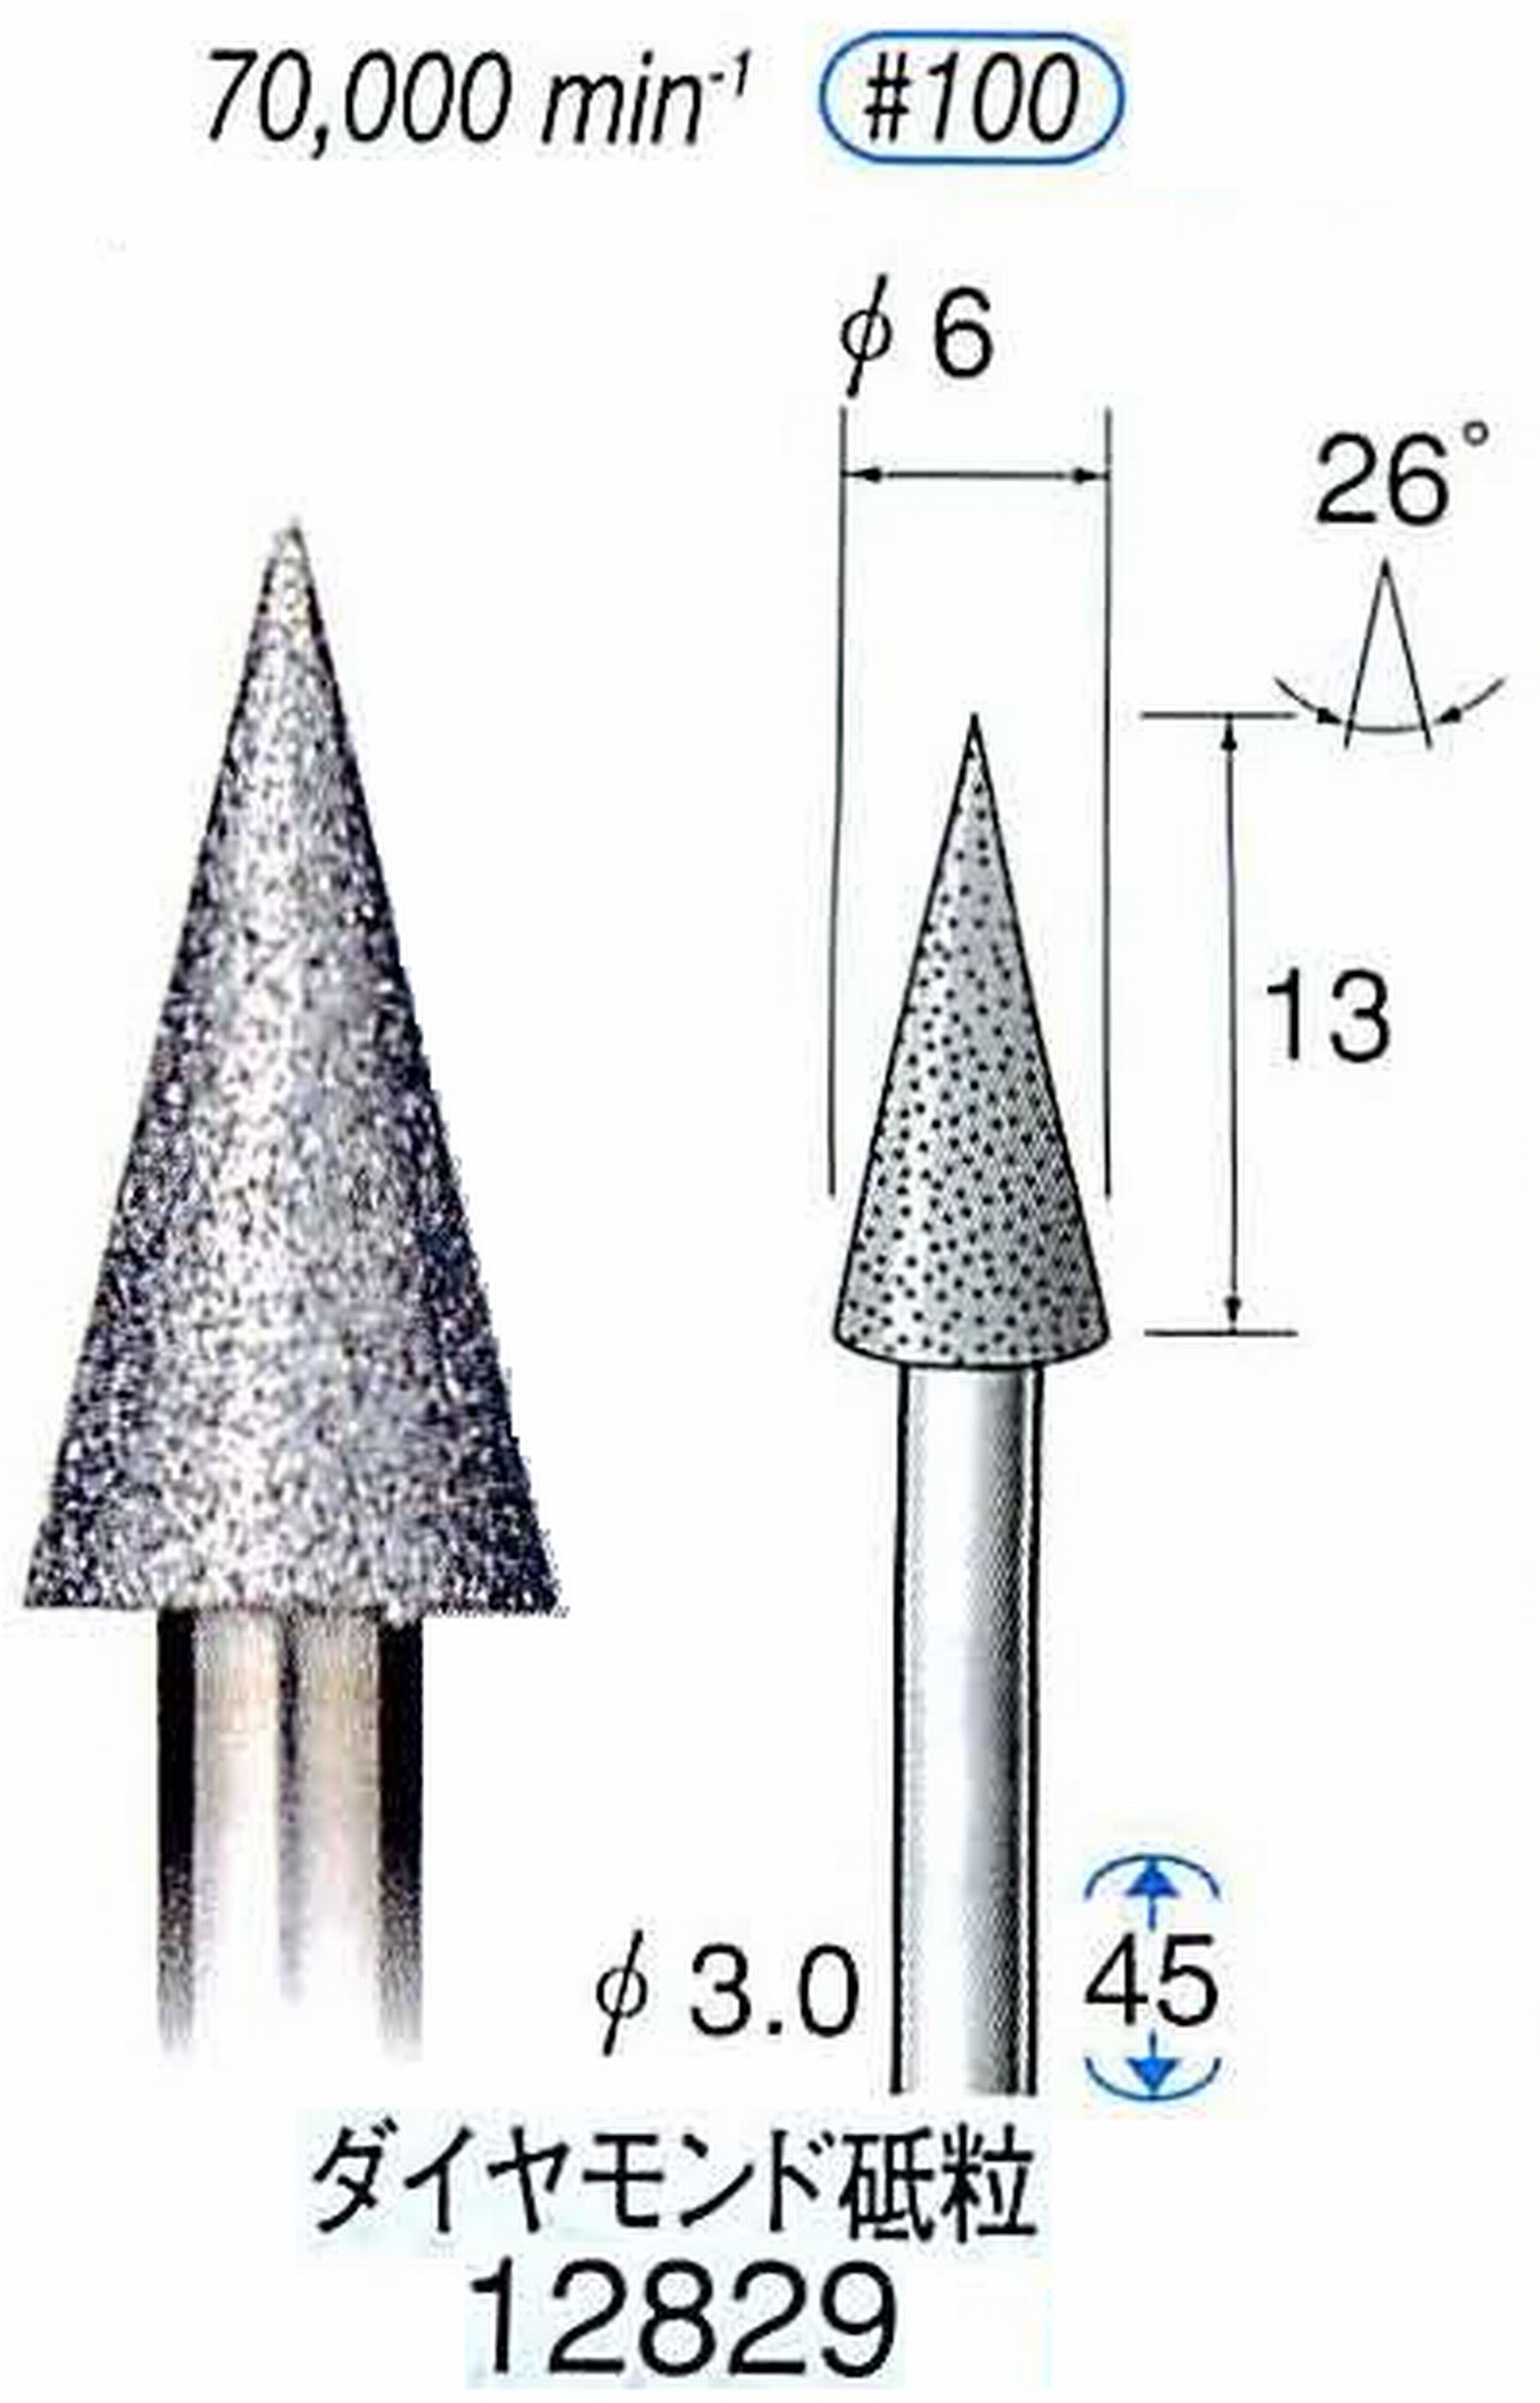 ナカニシ/NAKANISHI クラフト・ホビー用ダイヤモンドバー ダイヤモンド砥粒 軸径(シャンク)φ3.0mm 12829